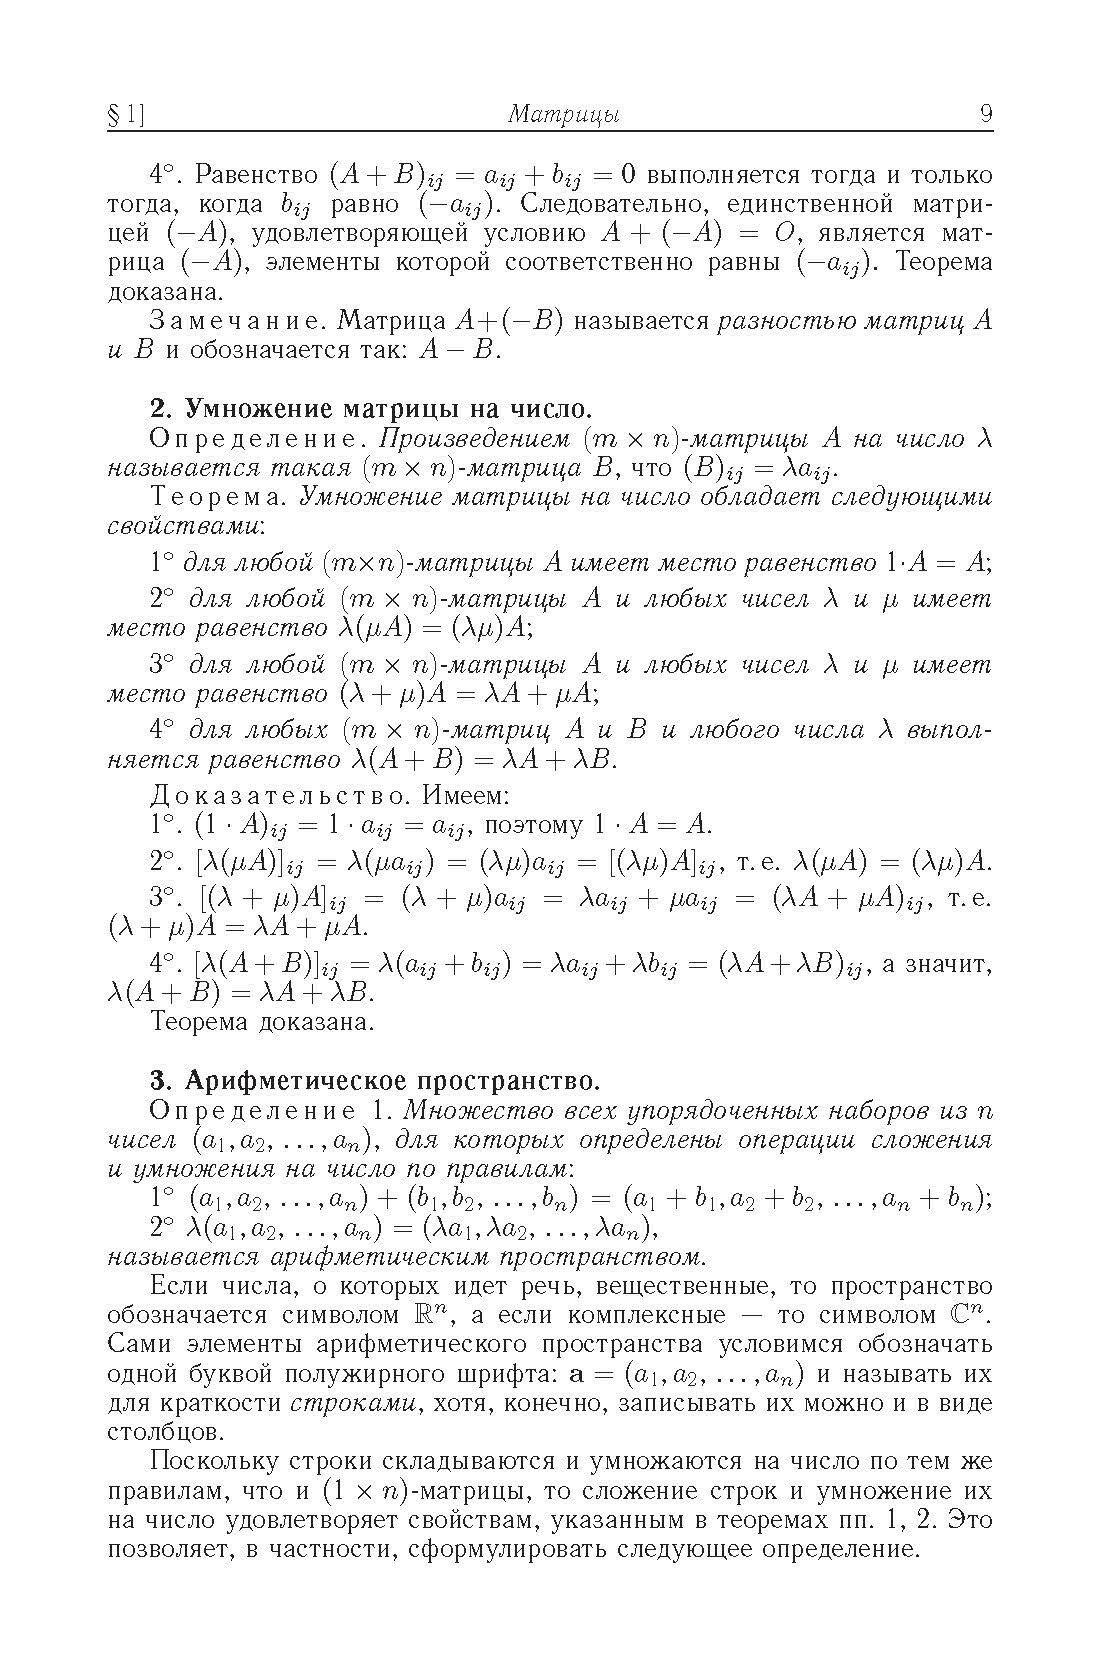 Аналитическая геометрия и линейная алгебра. Учебное пособие - фото №2